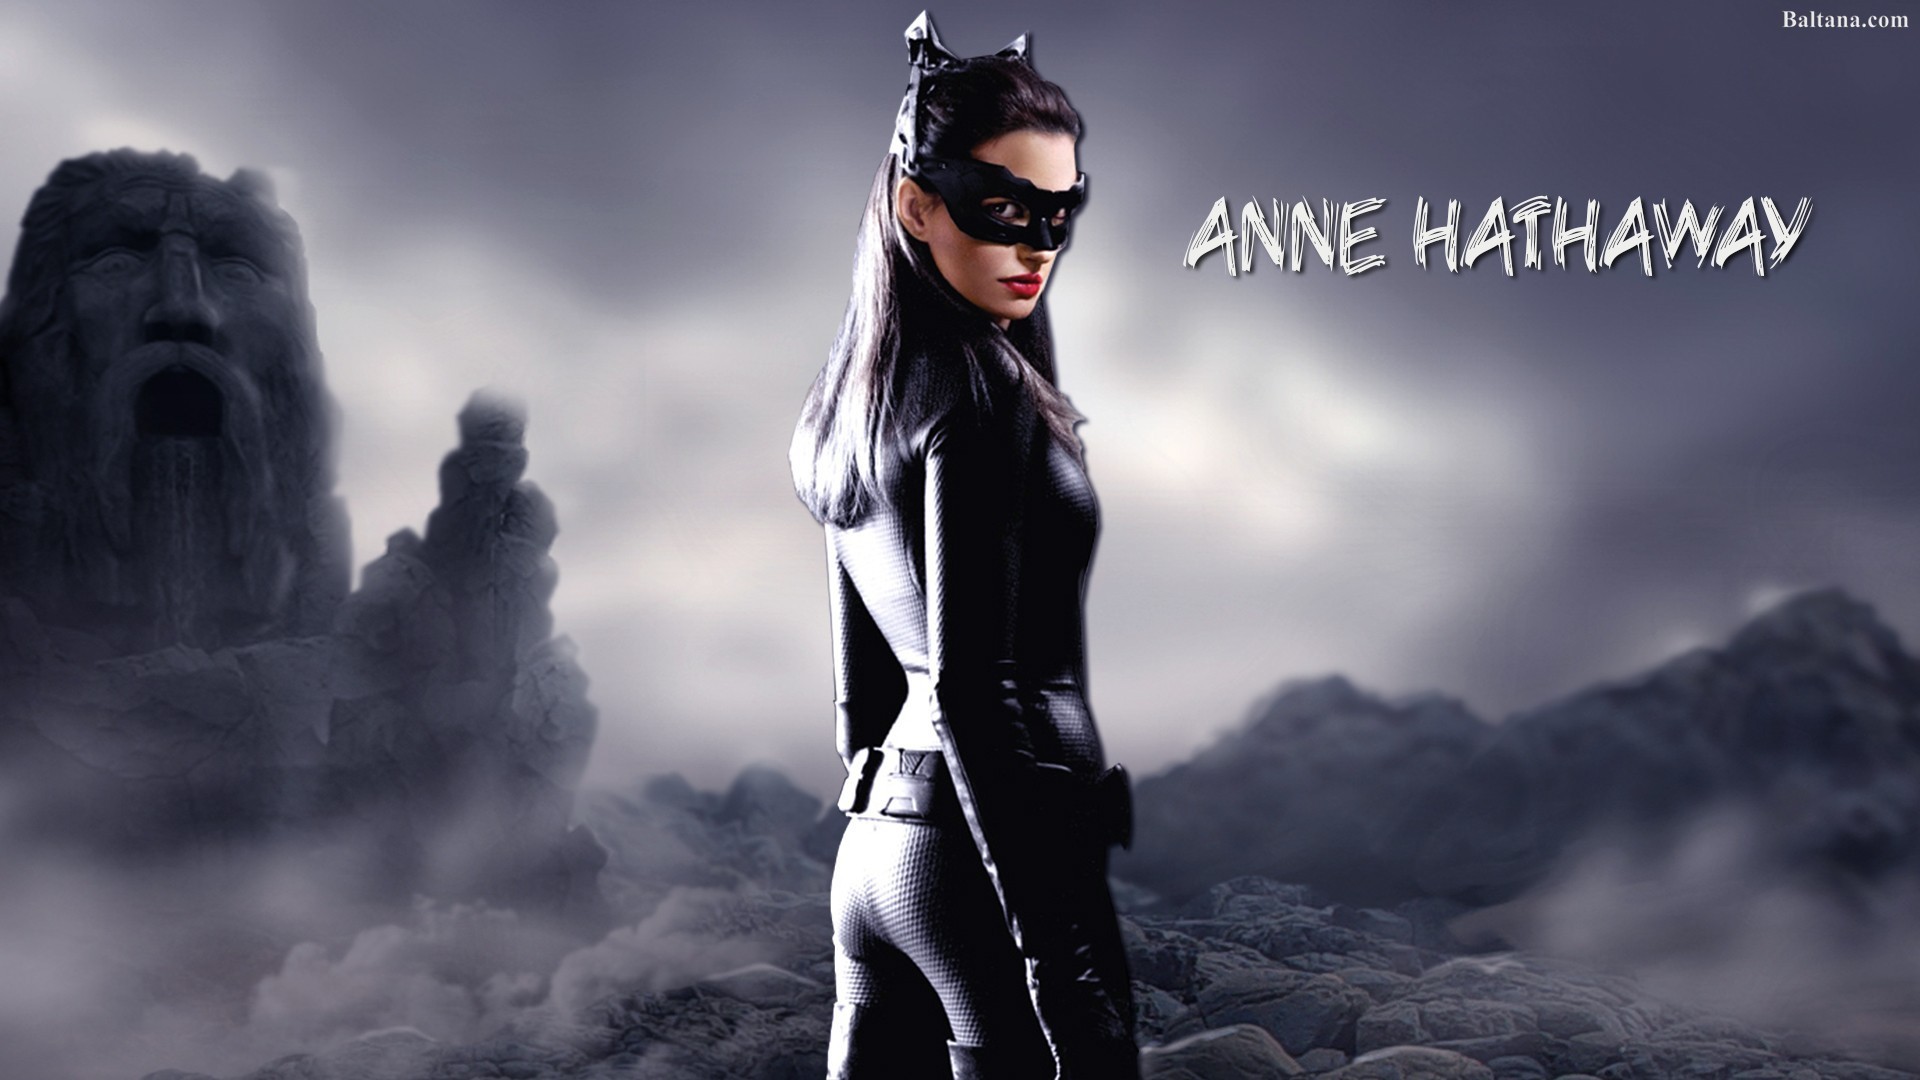 Anne Hathaway In Black Dress 2022 Photoshoot 4K Ultra HD Mobile Wallpaper